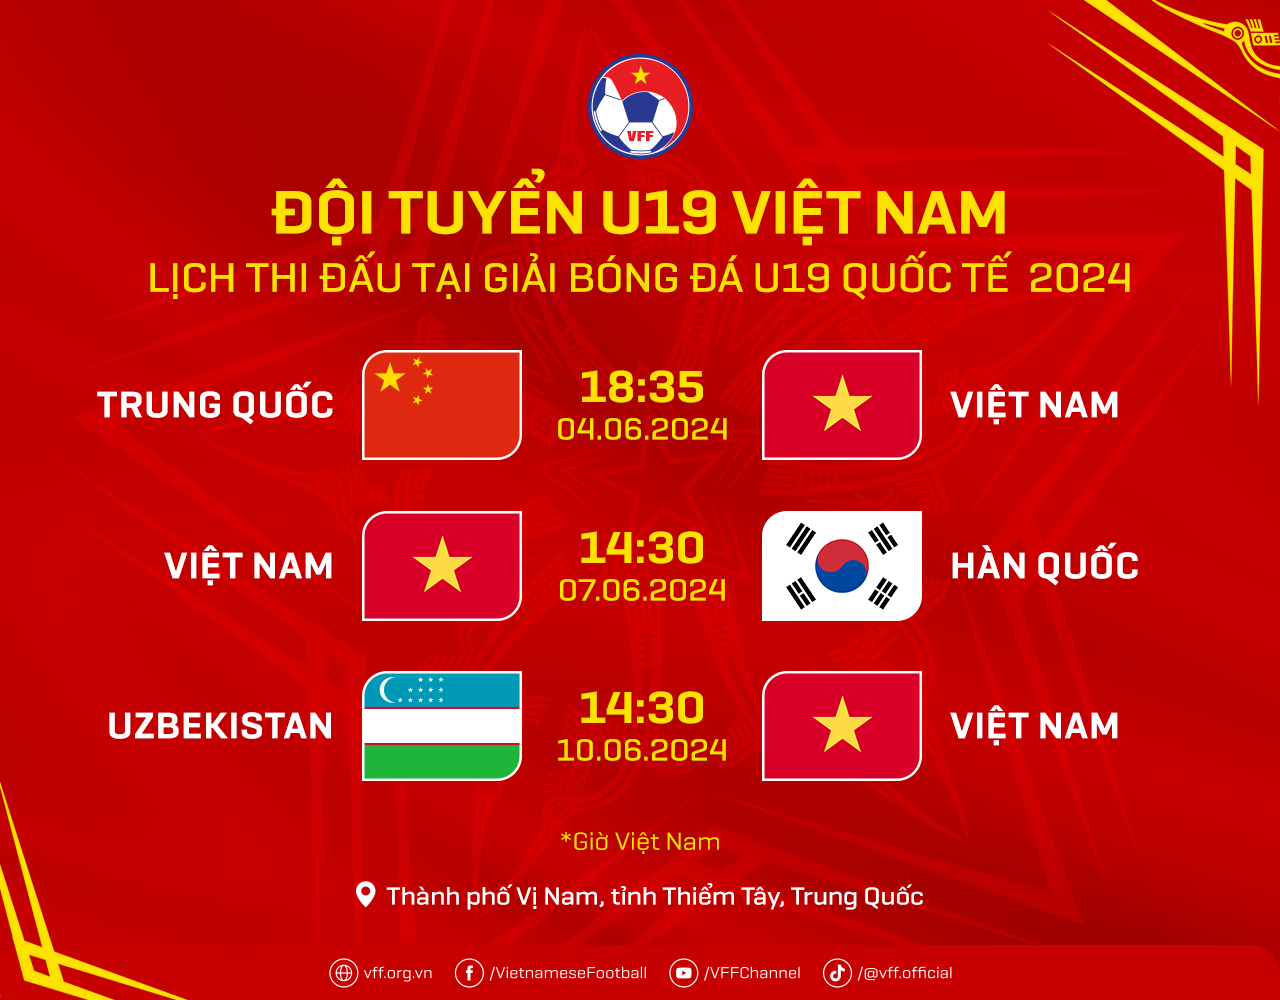 HLV Hứa Hiền Vinh đặt mục tiêu phát triển U19 Việt Nam trên nền tảng đã xây dựng